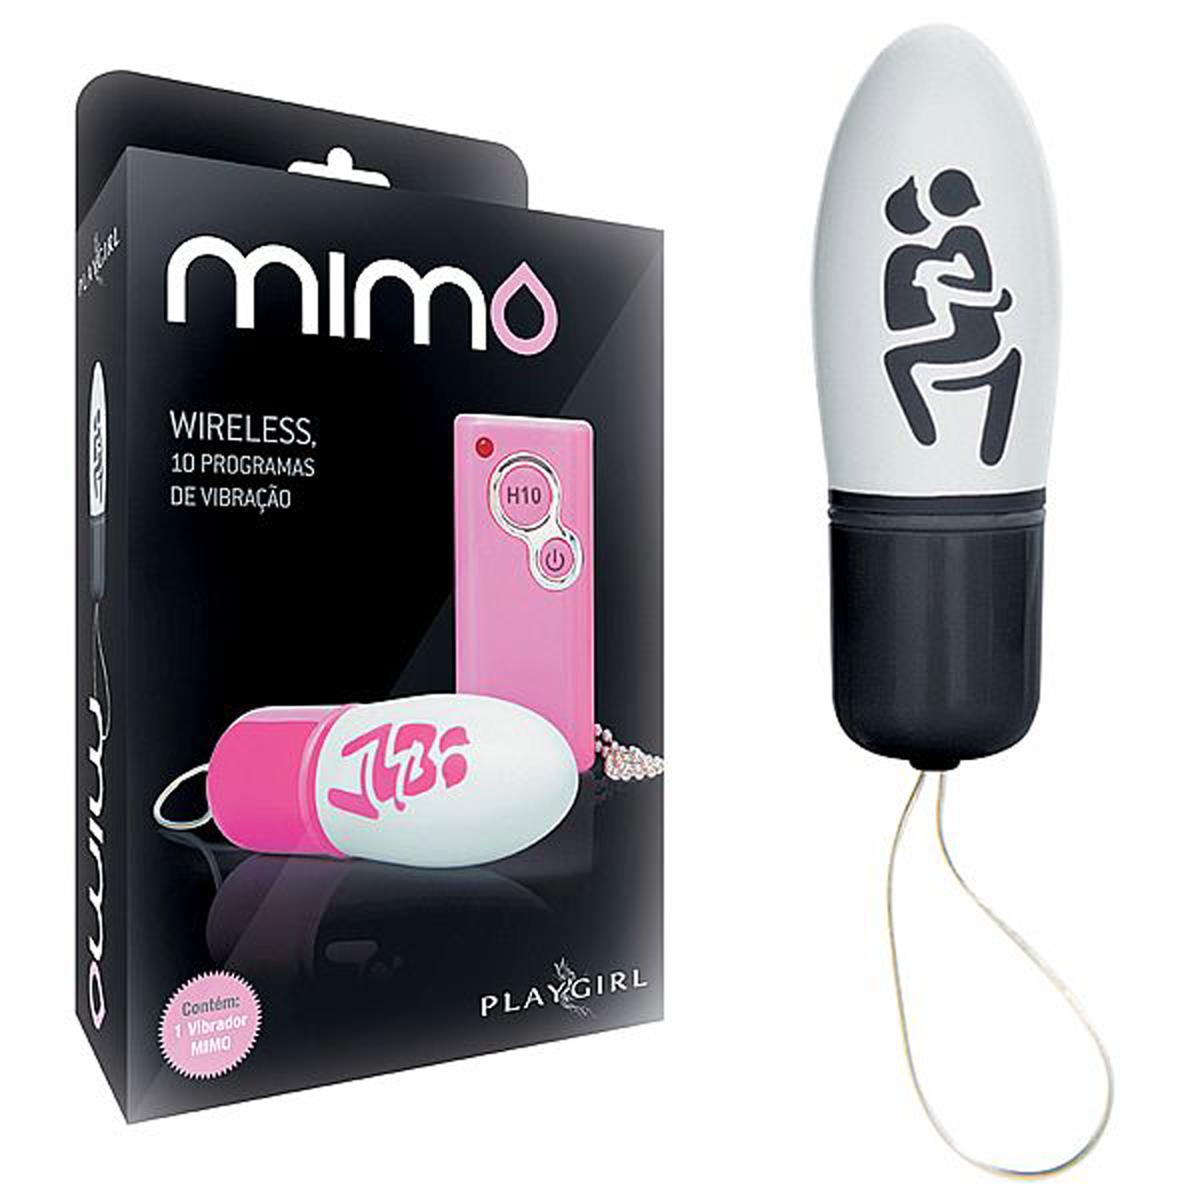 Vibrador Mimo Wireless com 10 Programas de Vibração Playgirl - Miess